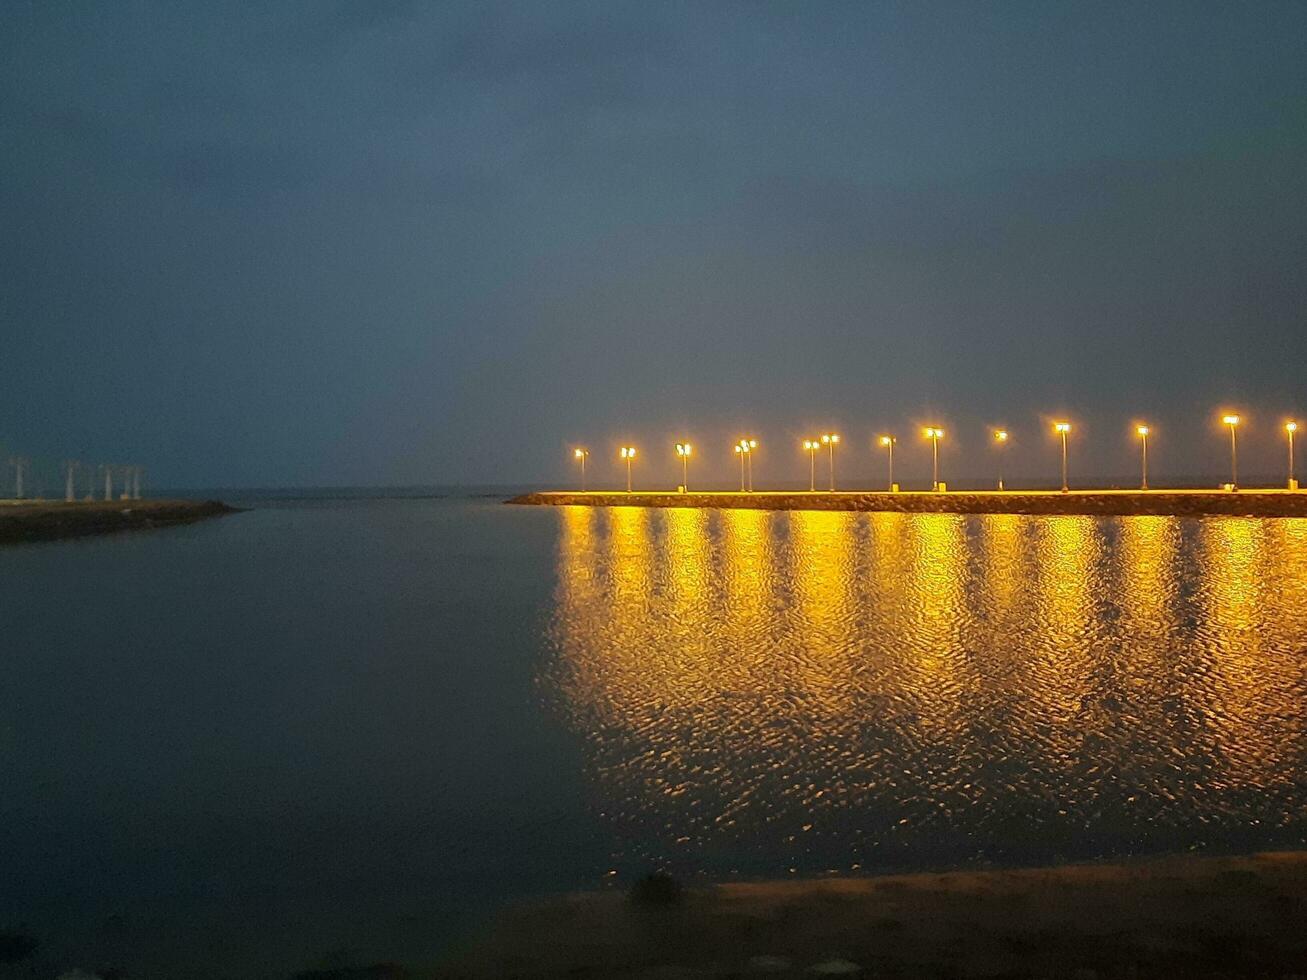 mooi ochtend- visie van al qunfudhah strand, saudi Arabië. de lichten Aan de strand zijn creëren een mooi tafereel in de ochtend. foto